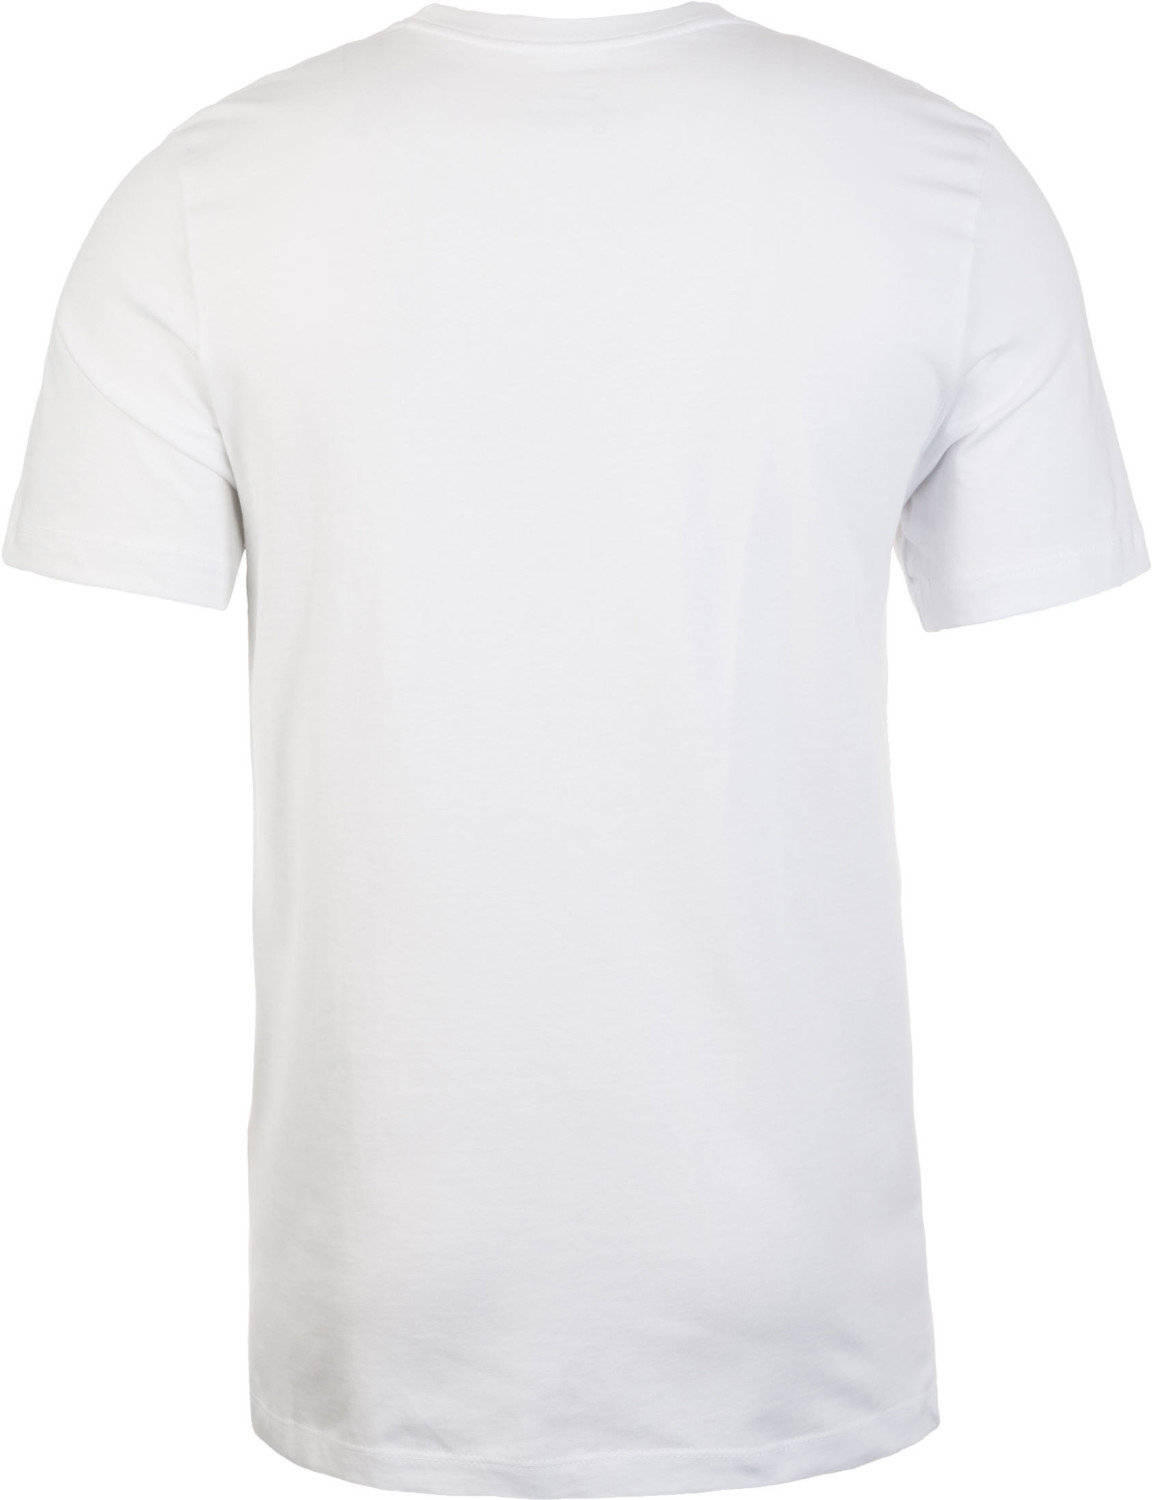 Nike Sportswear Shirt Futura 17,50 Preisvergleich bei Icon ab white/red | €